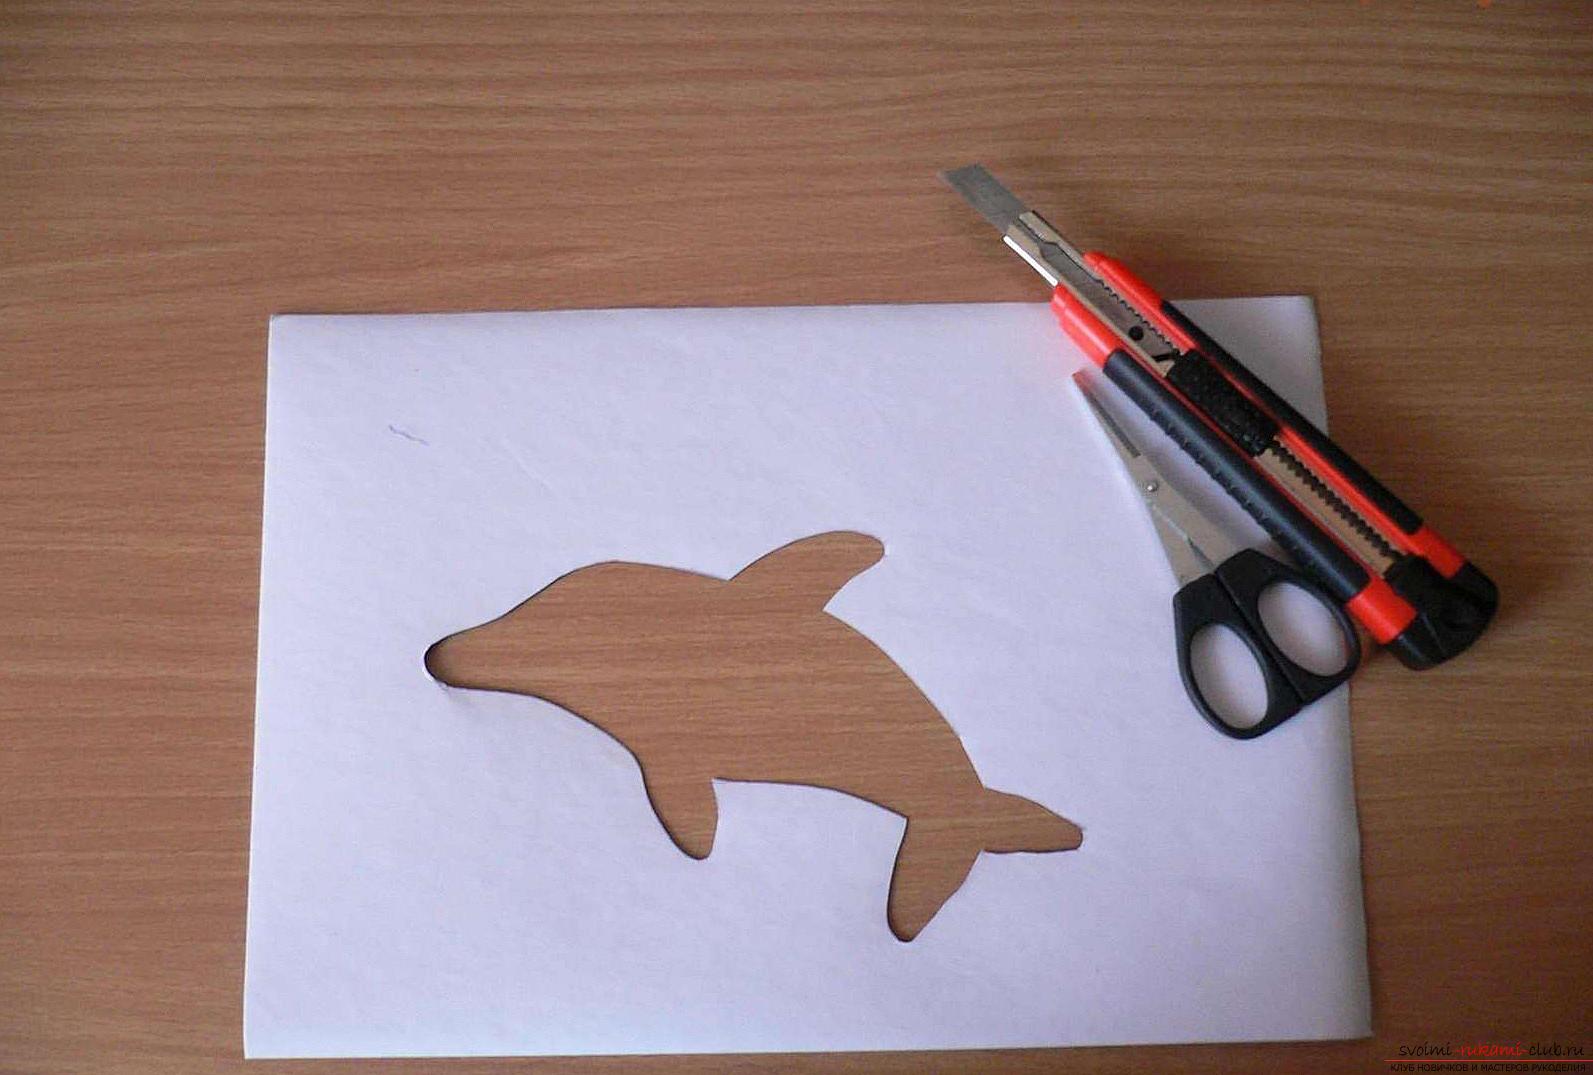 Как сделать картинку с дельфином в технике айрис фолдинг, подробная инструкция с шаблоном, фото и описанием работы. Фото №3